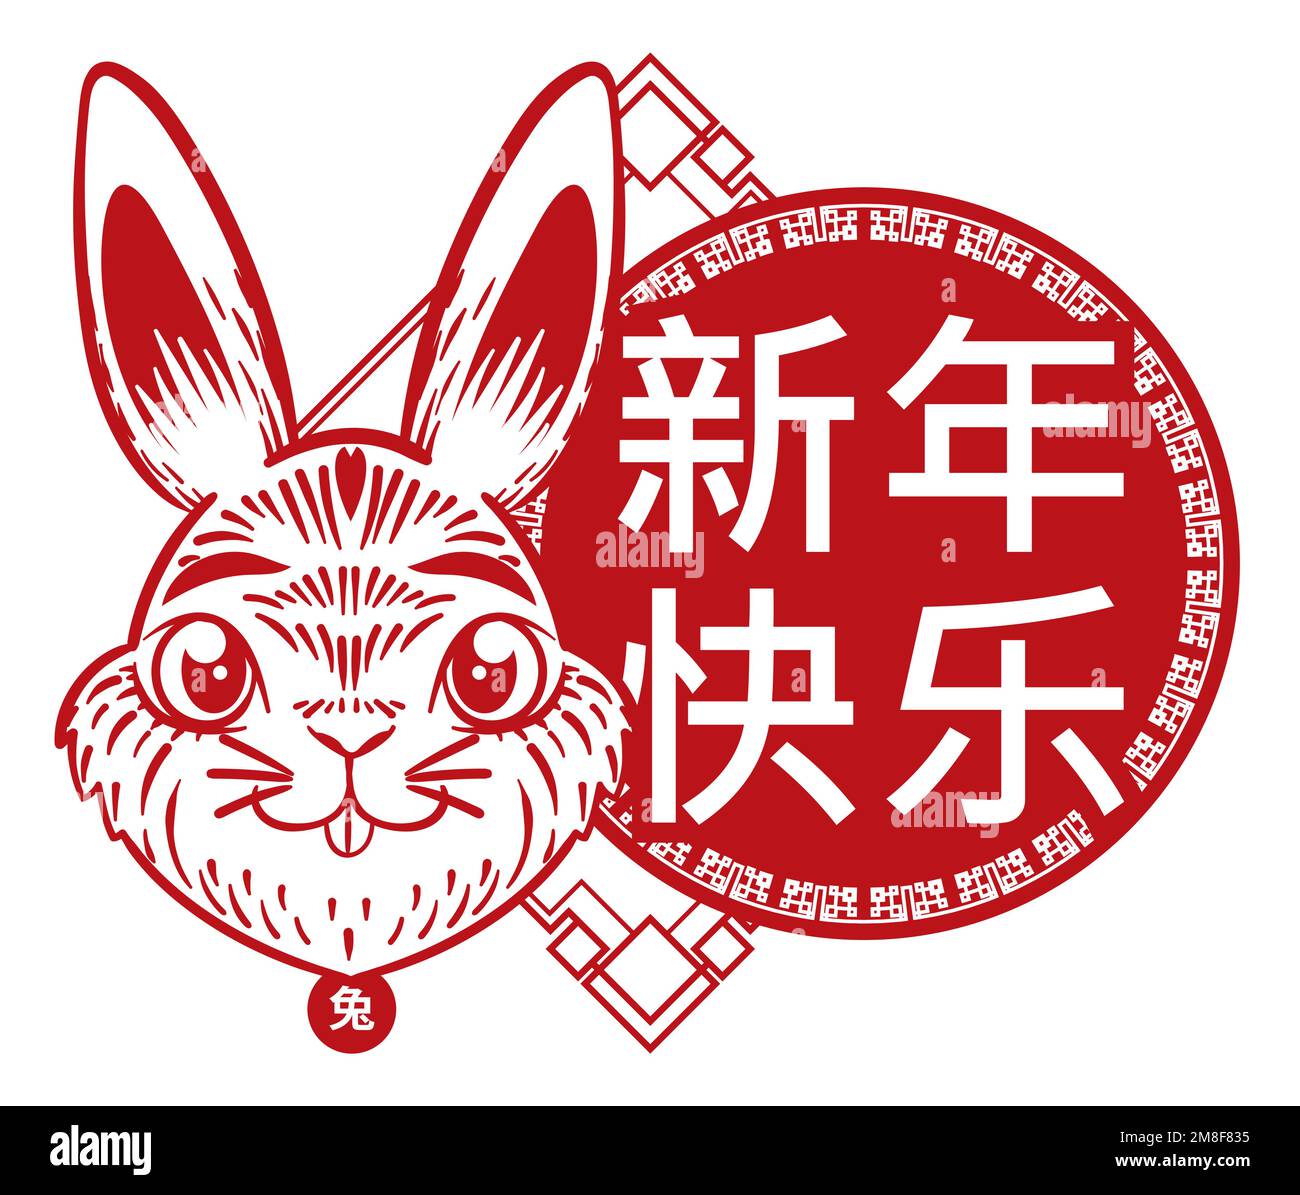 Motif rouge avec joli lapin et bouton rond avec salutation (écrit en calligraphie chinoise) pour un joyeux nouvel an chinois. Illustration de Vecteur